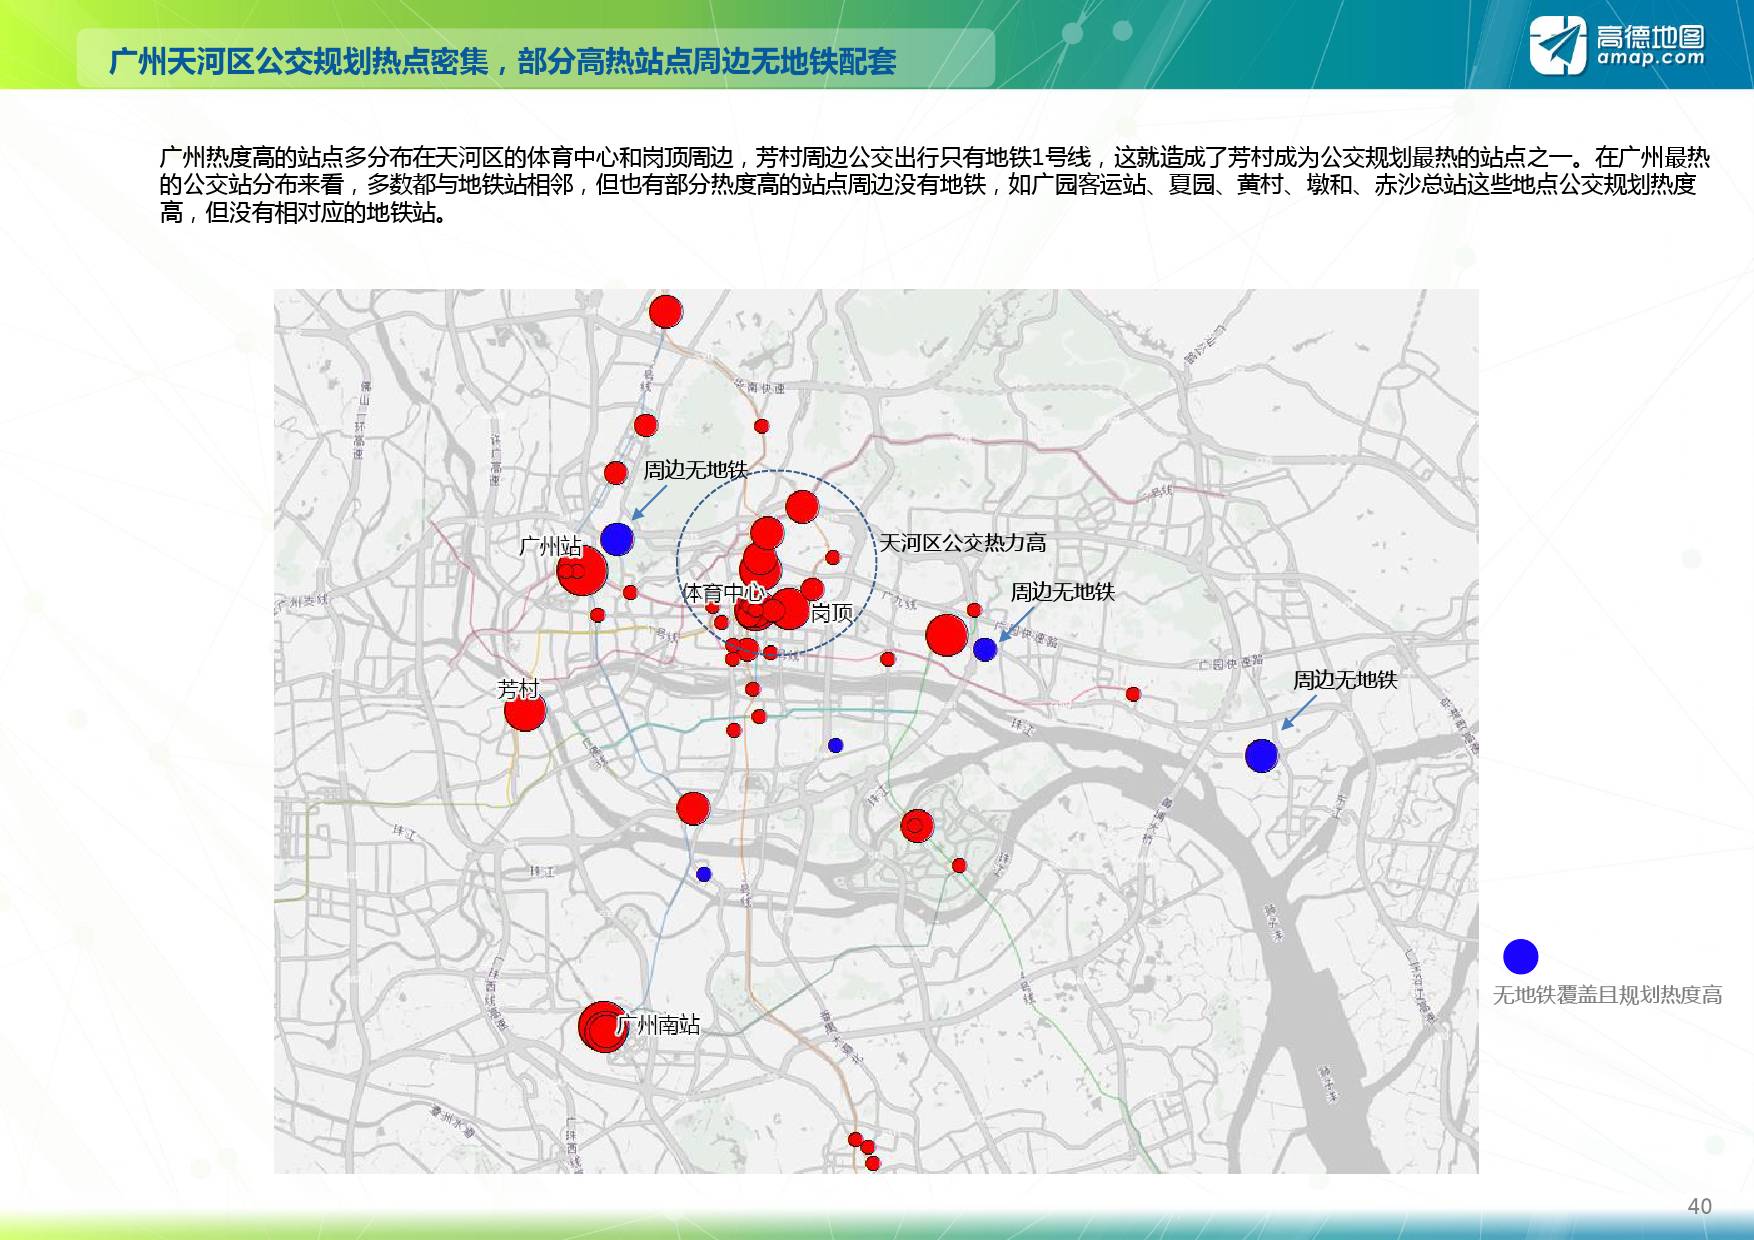 高德地图:2017上半年度中国主要城市公共交通大数据分析报告